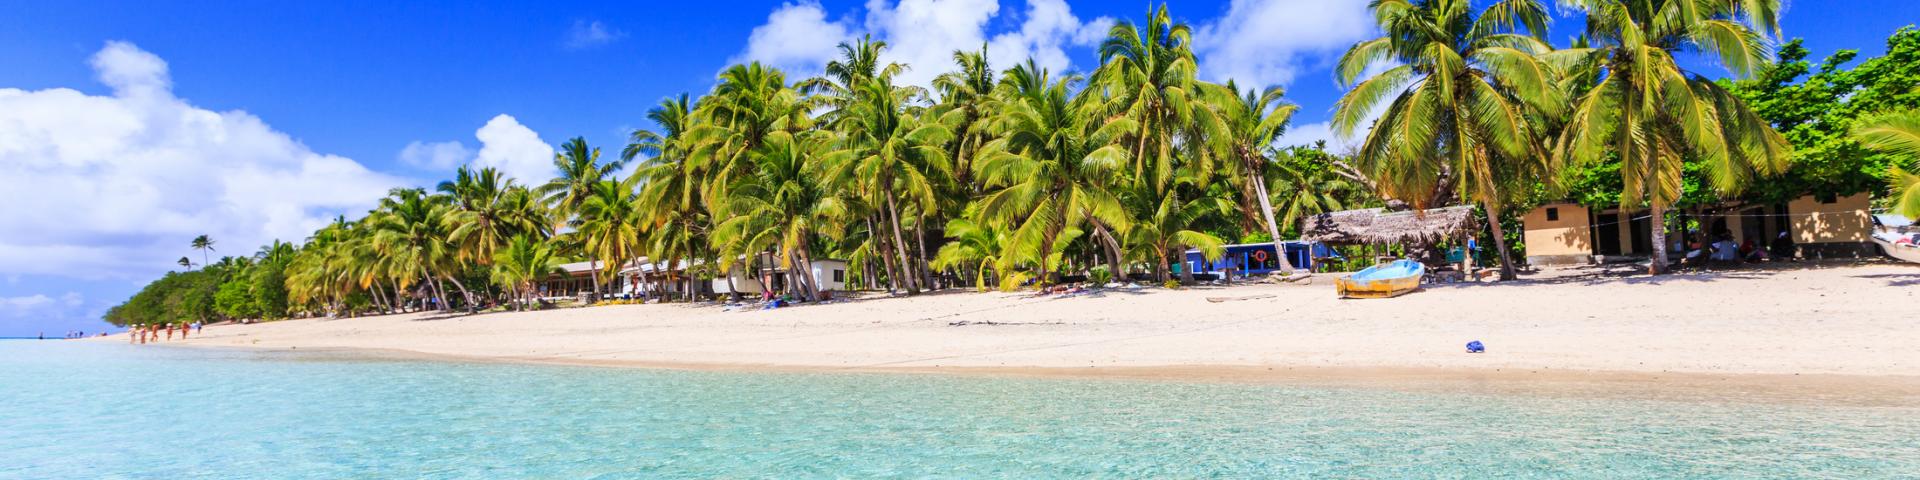 Wyspy Yasawa - luksusowe wakacje na Fidżi, sprawdzone hotele